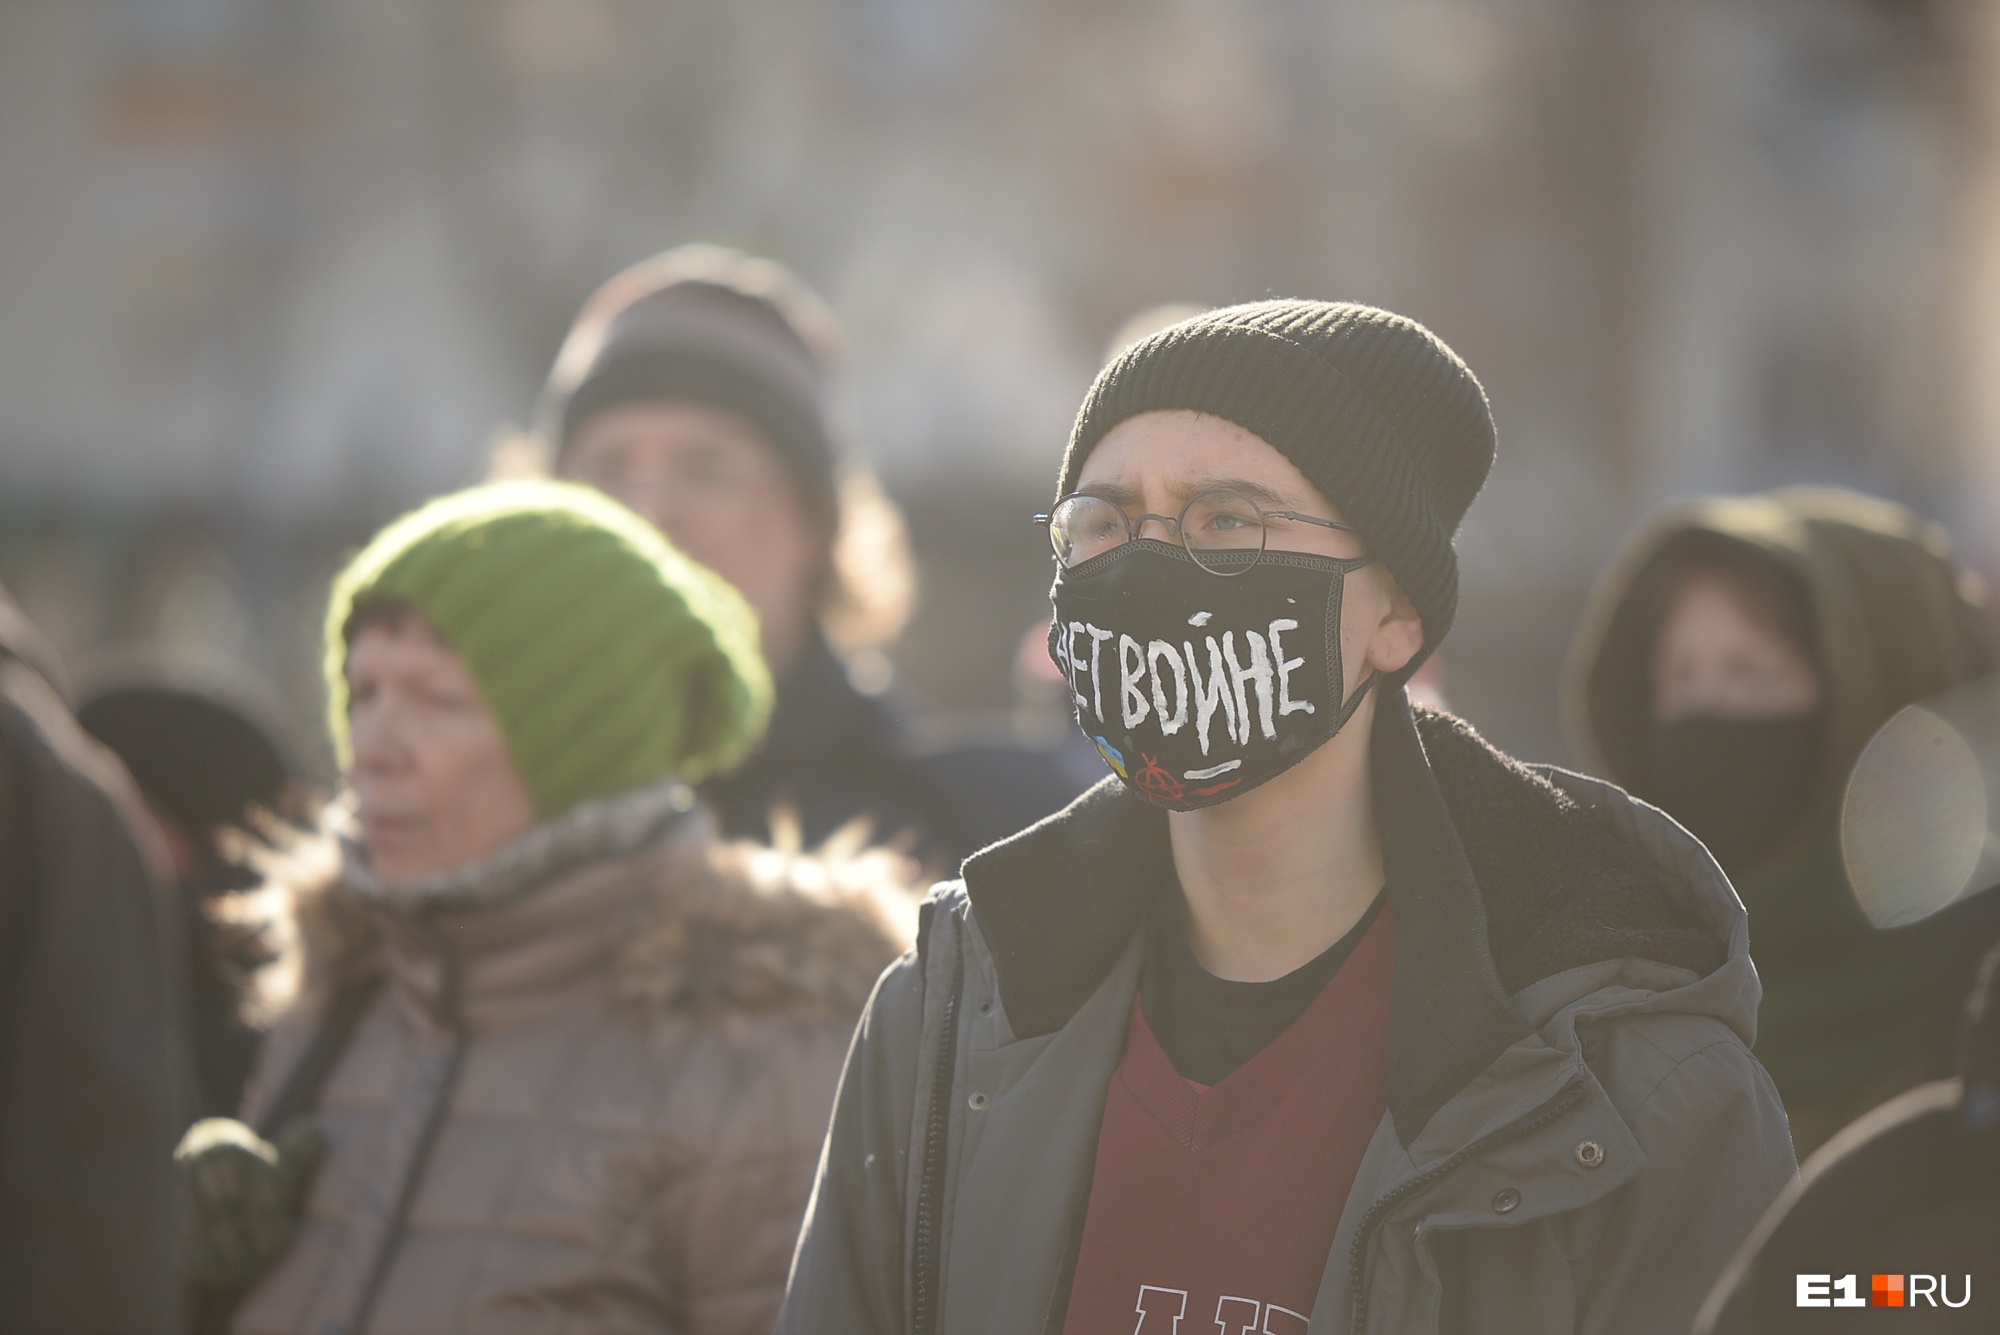 Вместо привычных плакатов и транспарантов мирные граждане использовали даже маски, чтобы выразить свою позицию